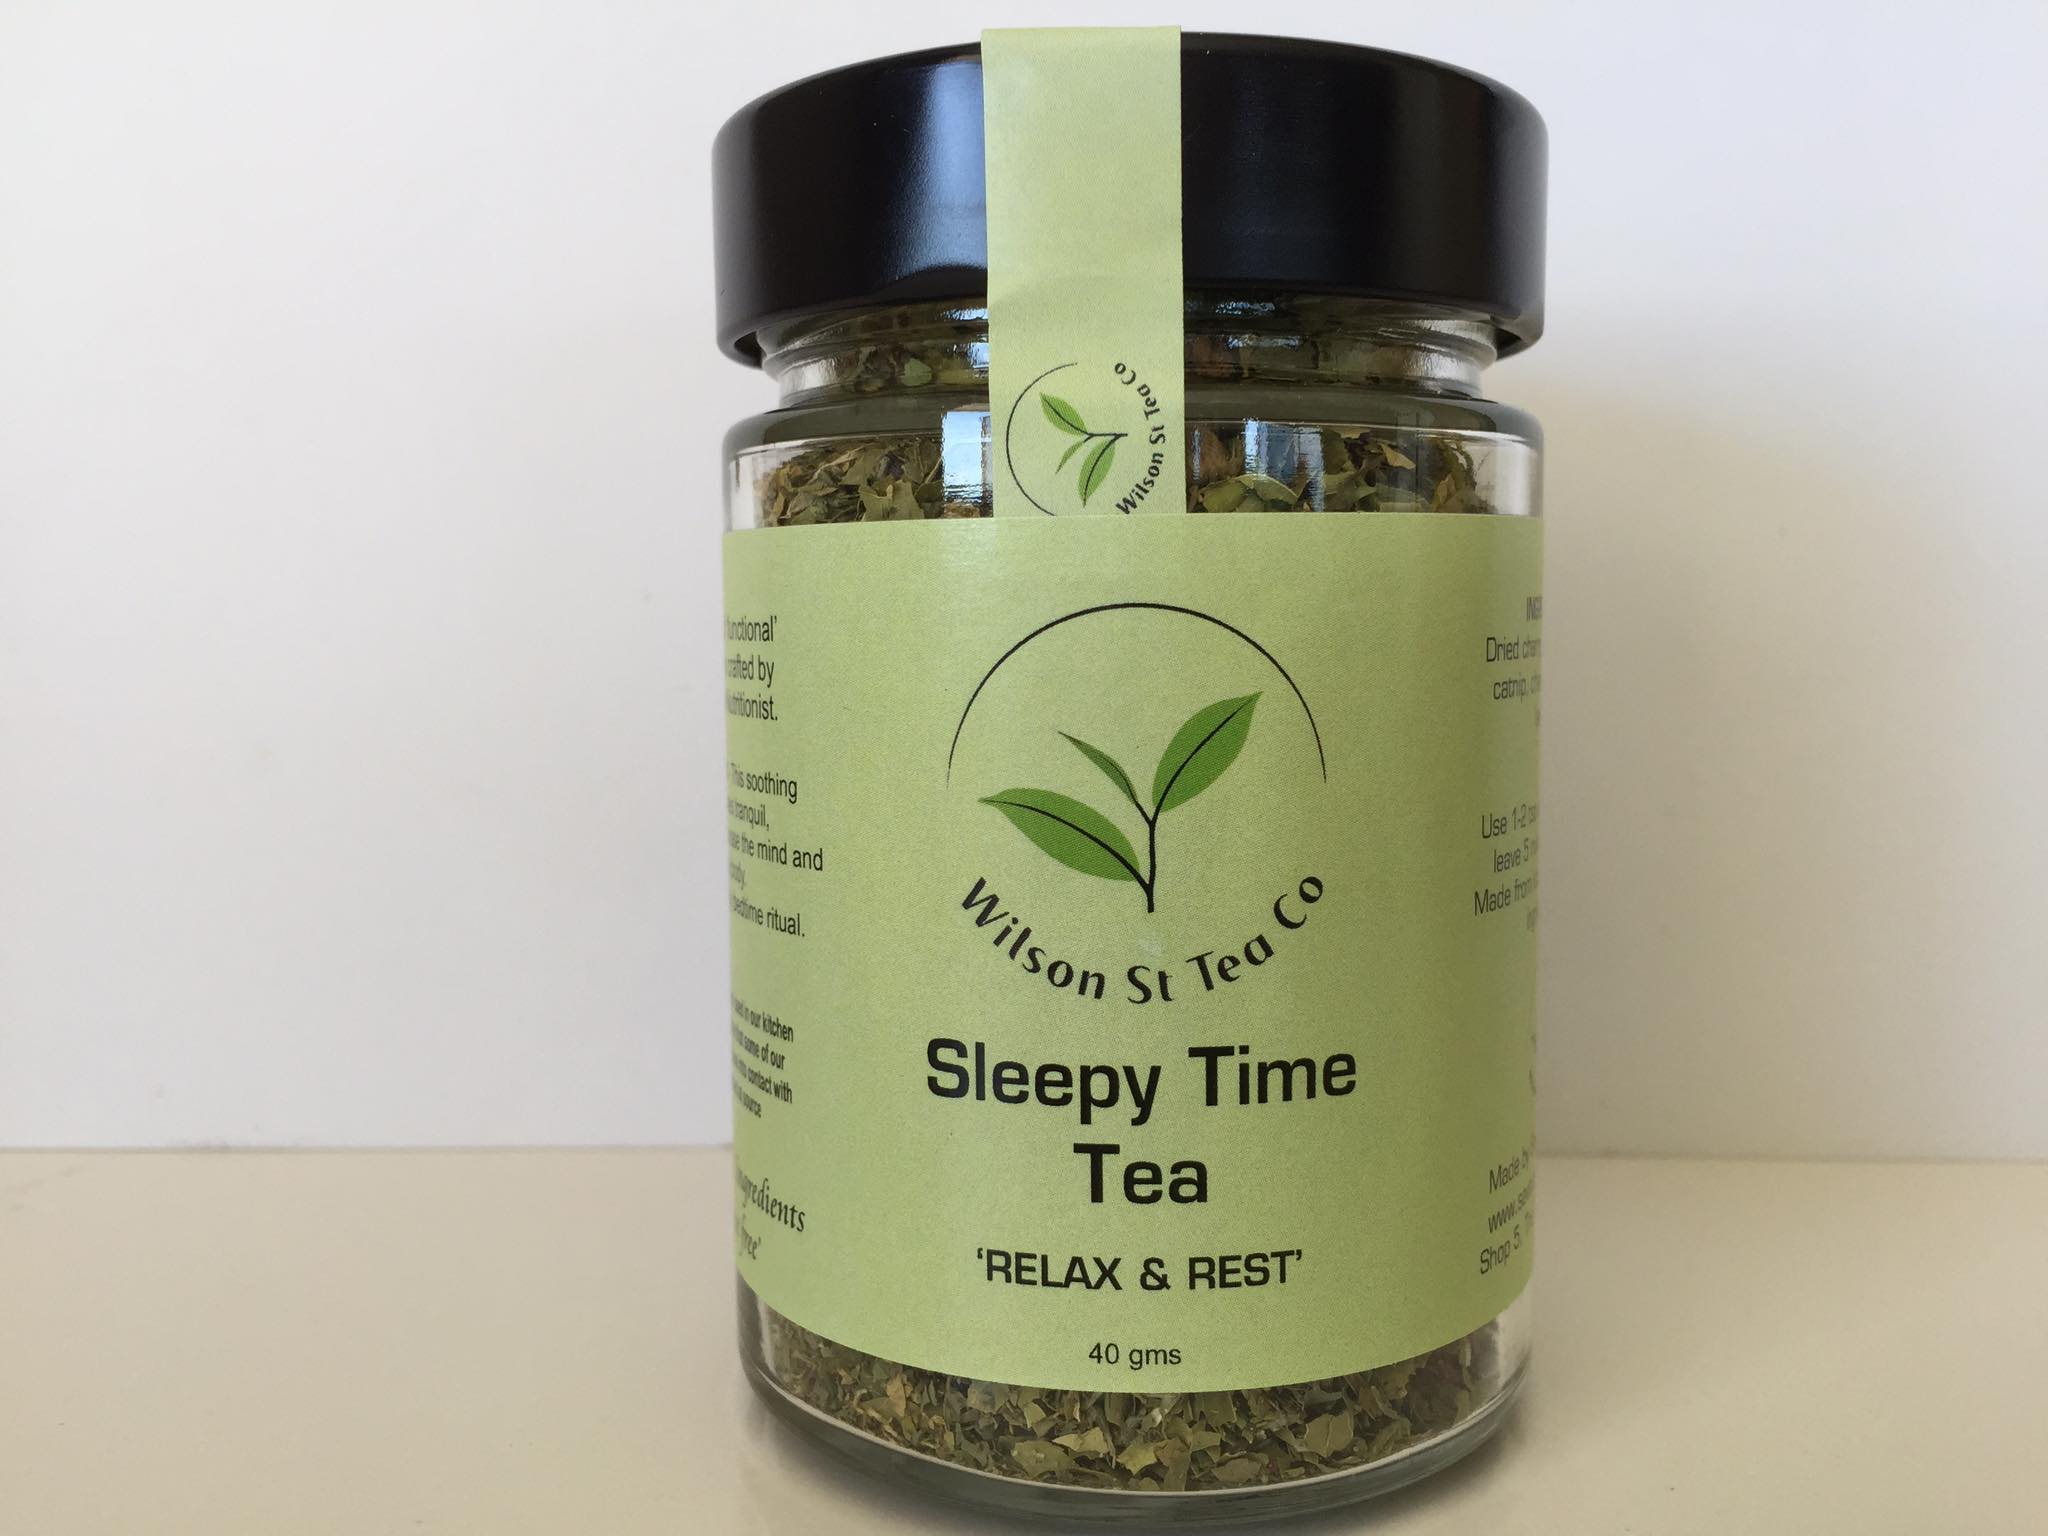 Wilson St - Sleepy Time Tea